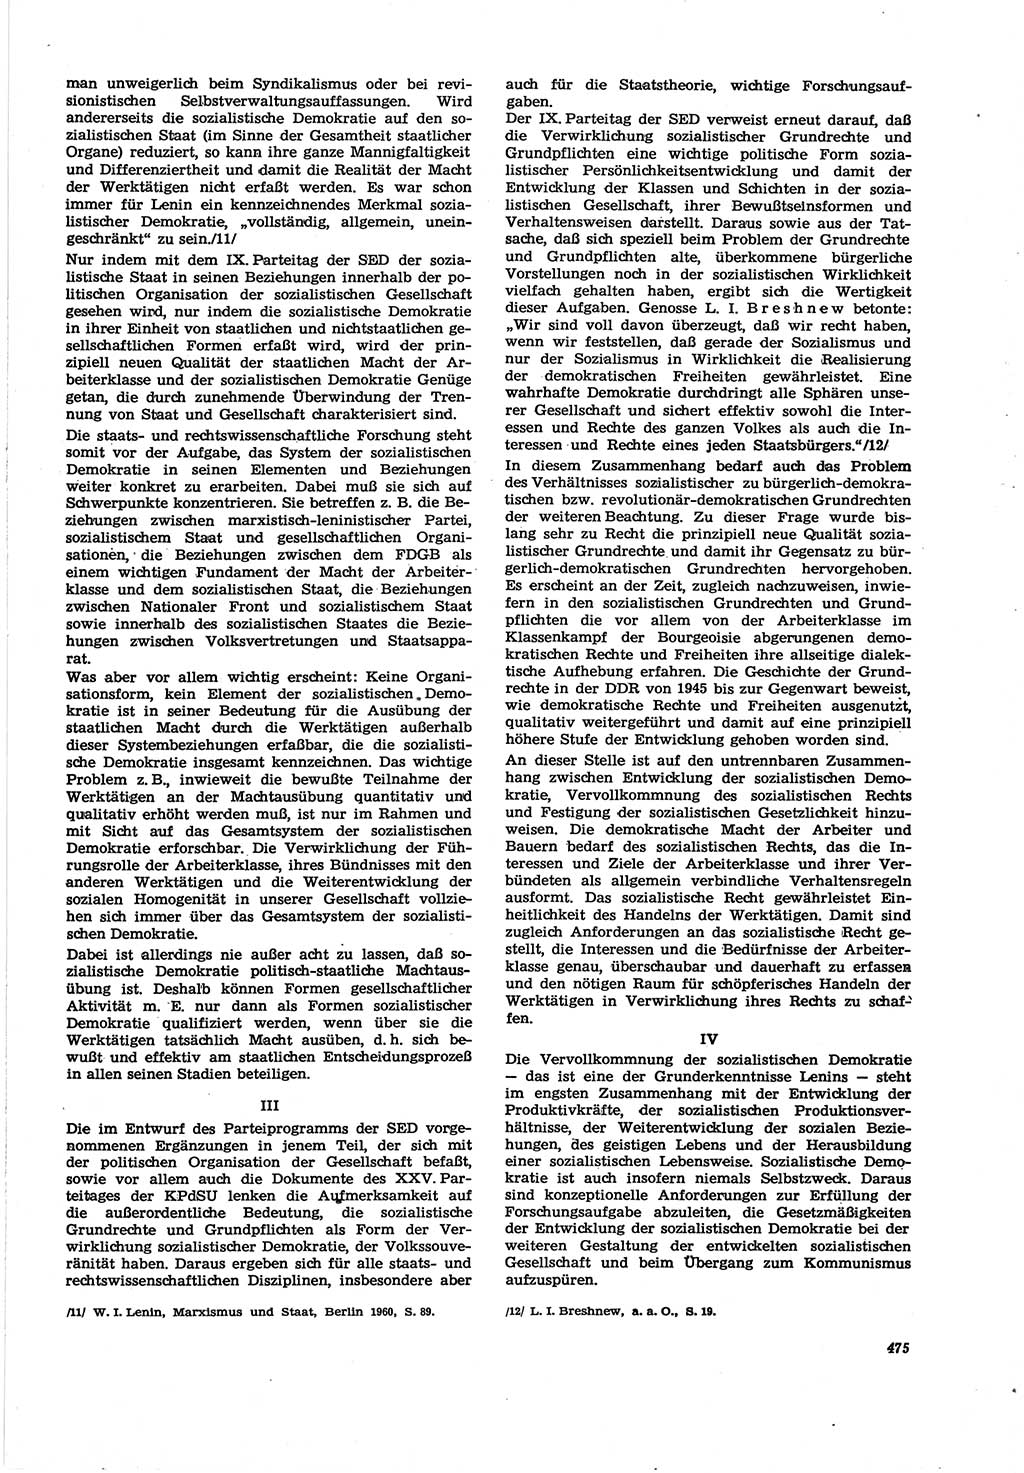 Neue Justiz (NJ), Zeitschrift für Recht und Rechtswissenschaft [Deutsche Demokratische Republik (DDR)], 30. Jahrgang 1976, Seite 475 (NJ DDR 1976, S. 475)